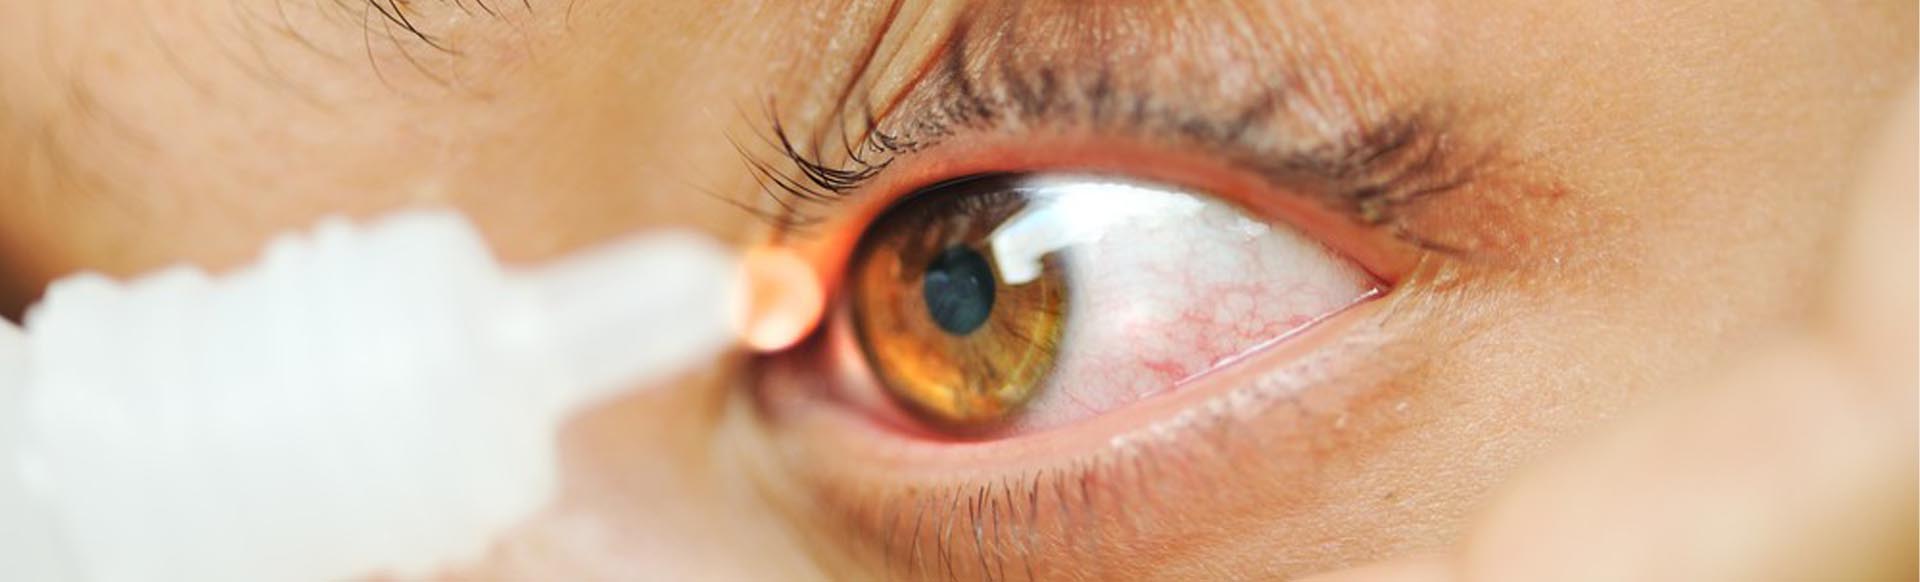 Синдром «сухого глаза». Симптомы, диагностика и лечение